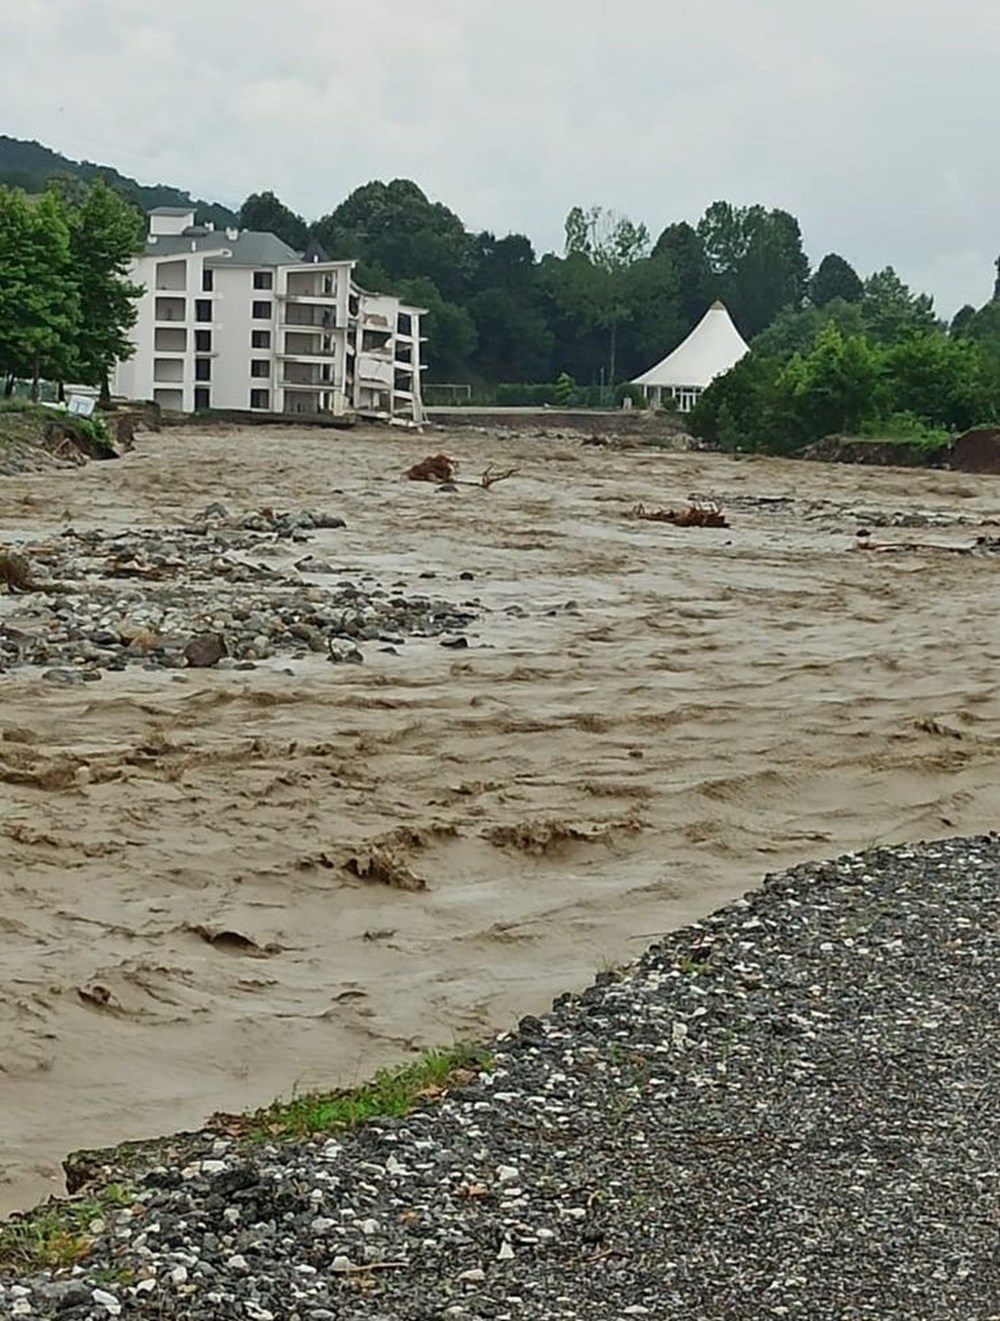 İl il sel bilançosu: Köprüler yıkıldı, evler sular altında kaldı - 16